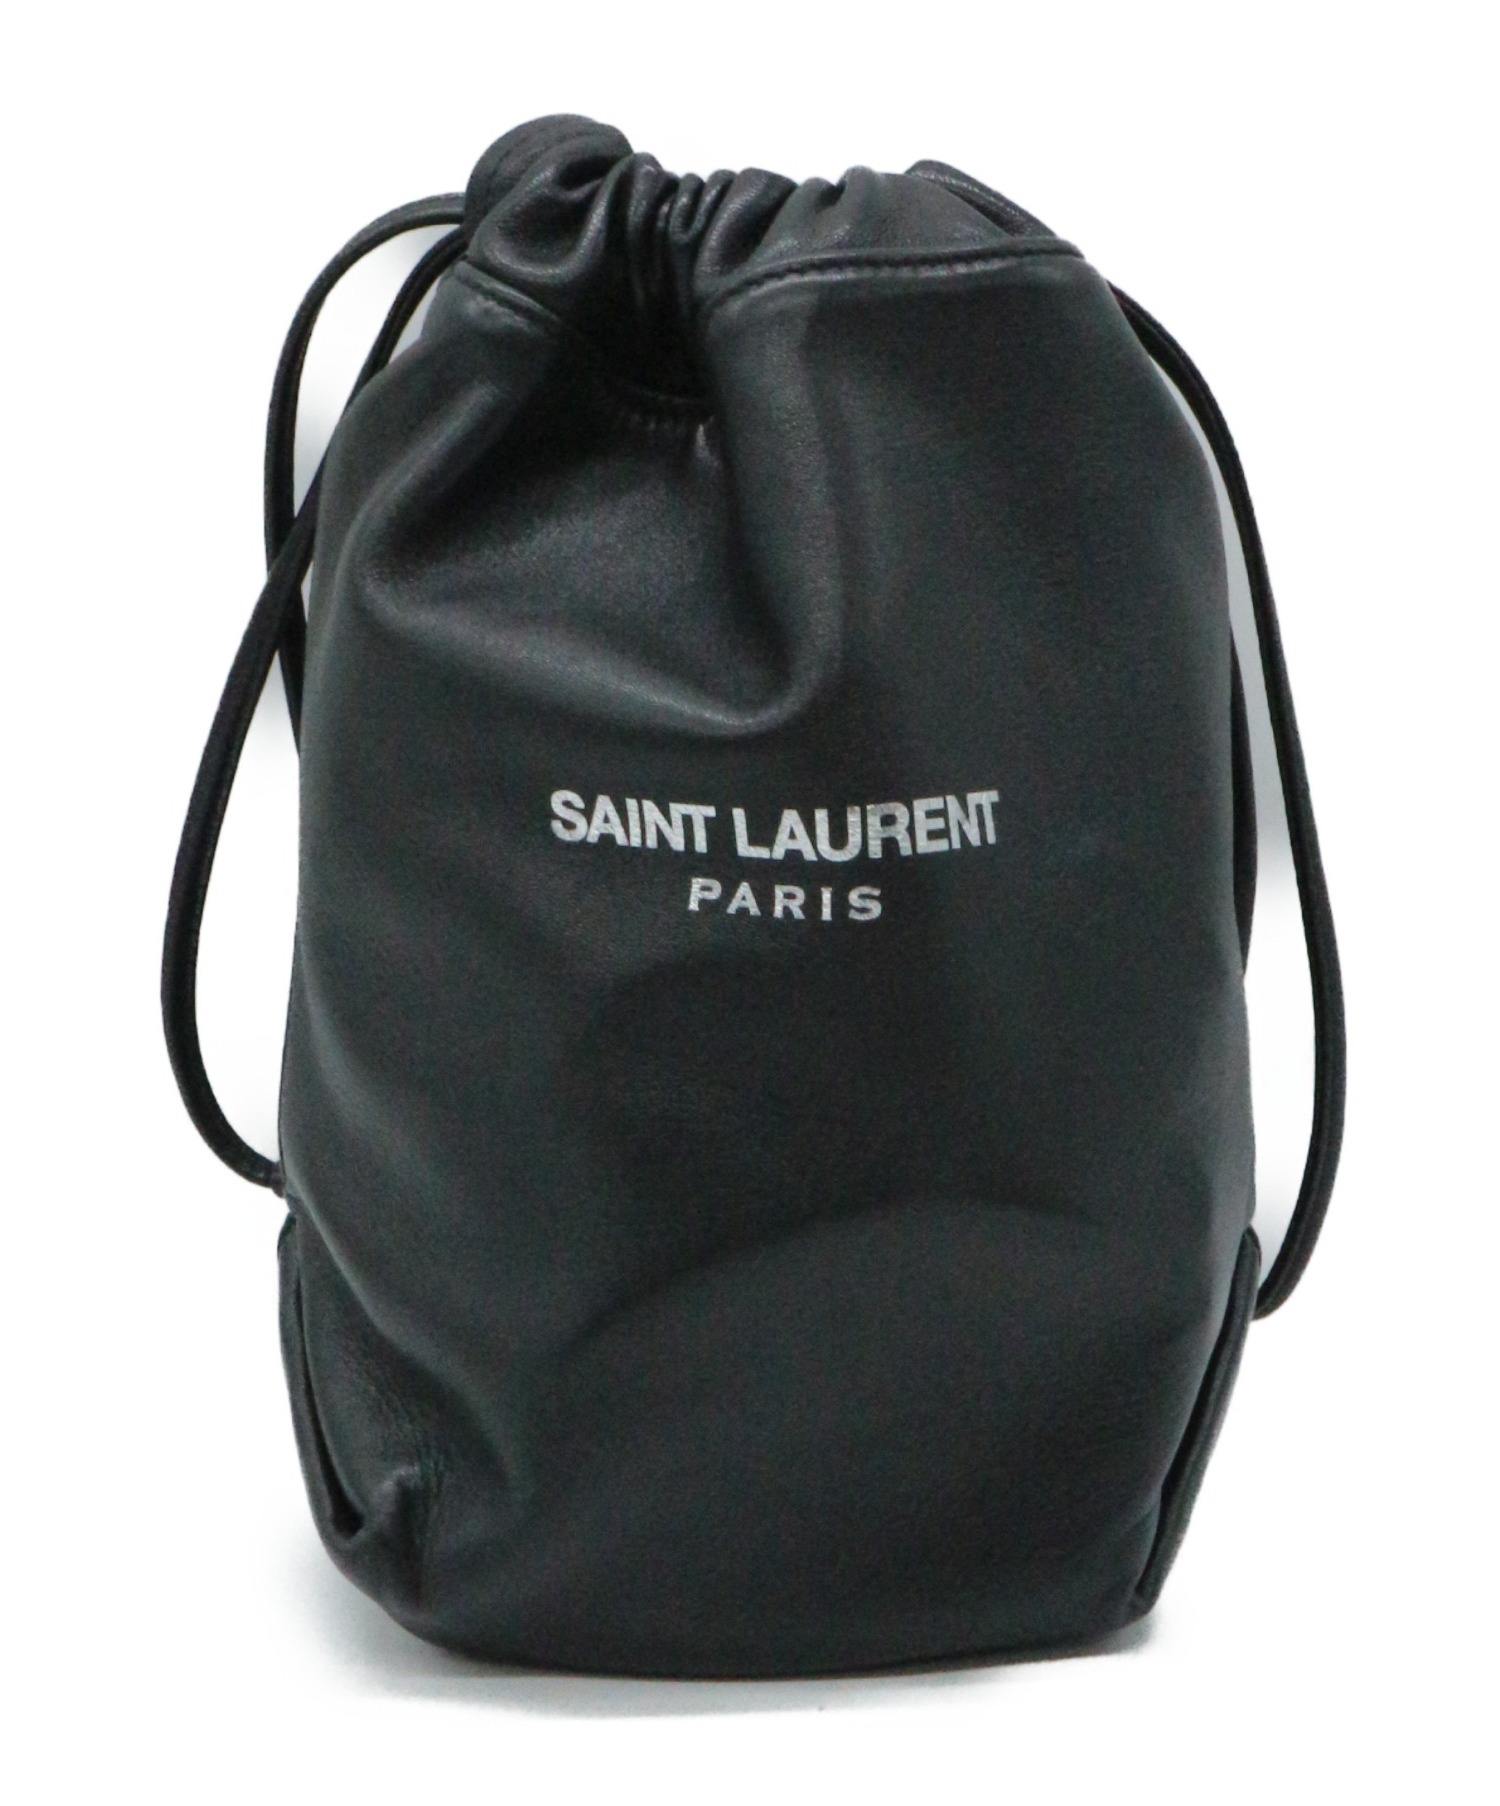 Saint Laurent Paris (サンローランパリ) スモールポーチ付き巾着ショルダーバッグ ブラック TEDDY YSL583328 0319